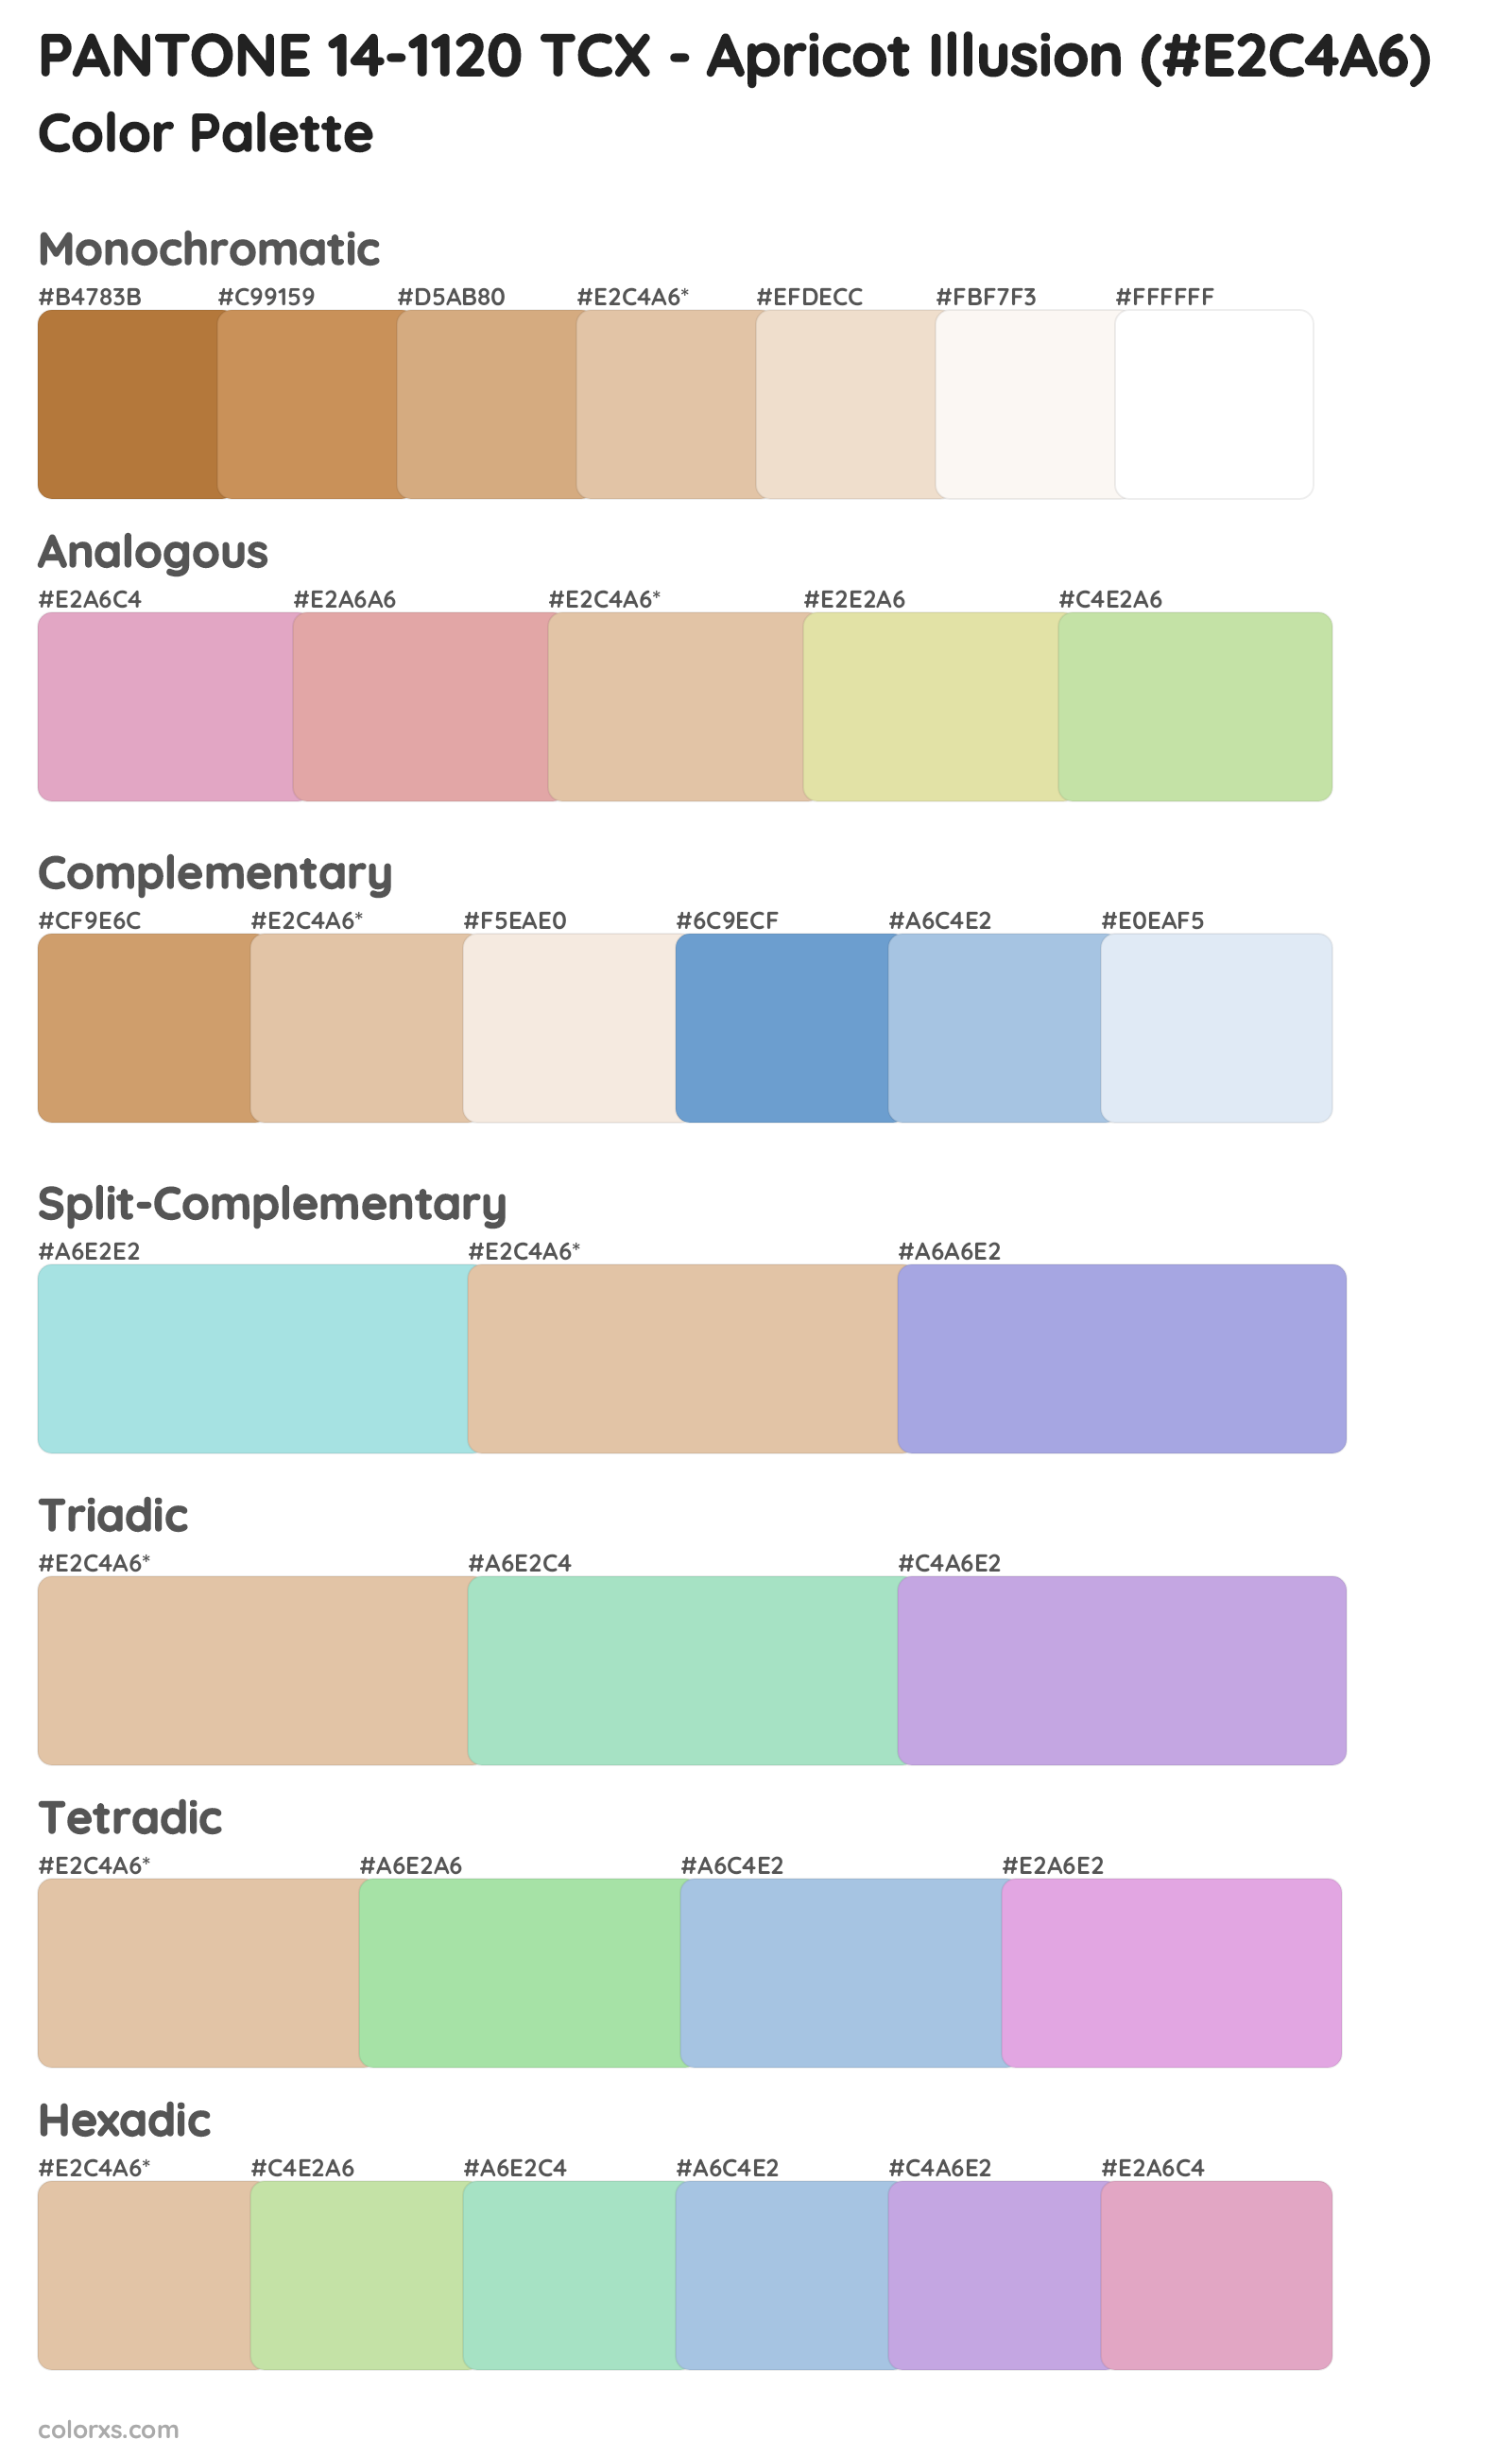 PANTONE 14-1120 TCX - Apricot Illusion Color Scheme Palettes